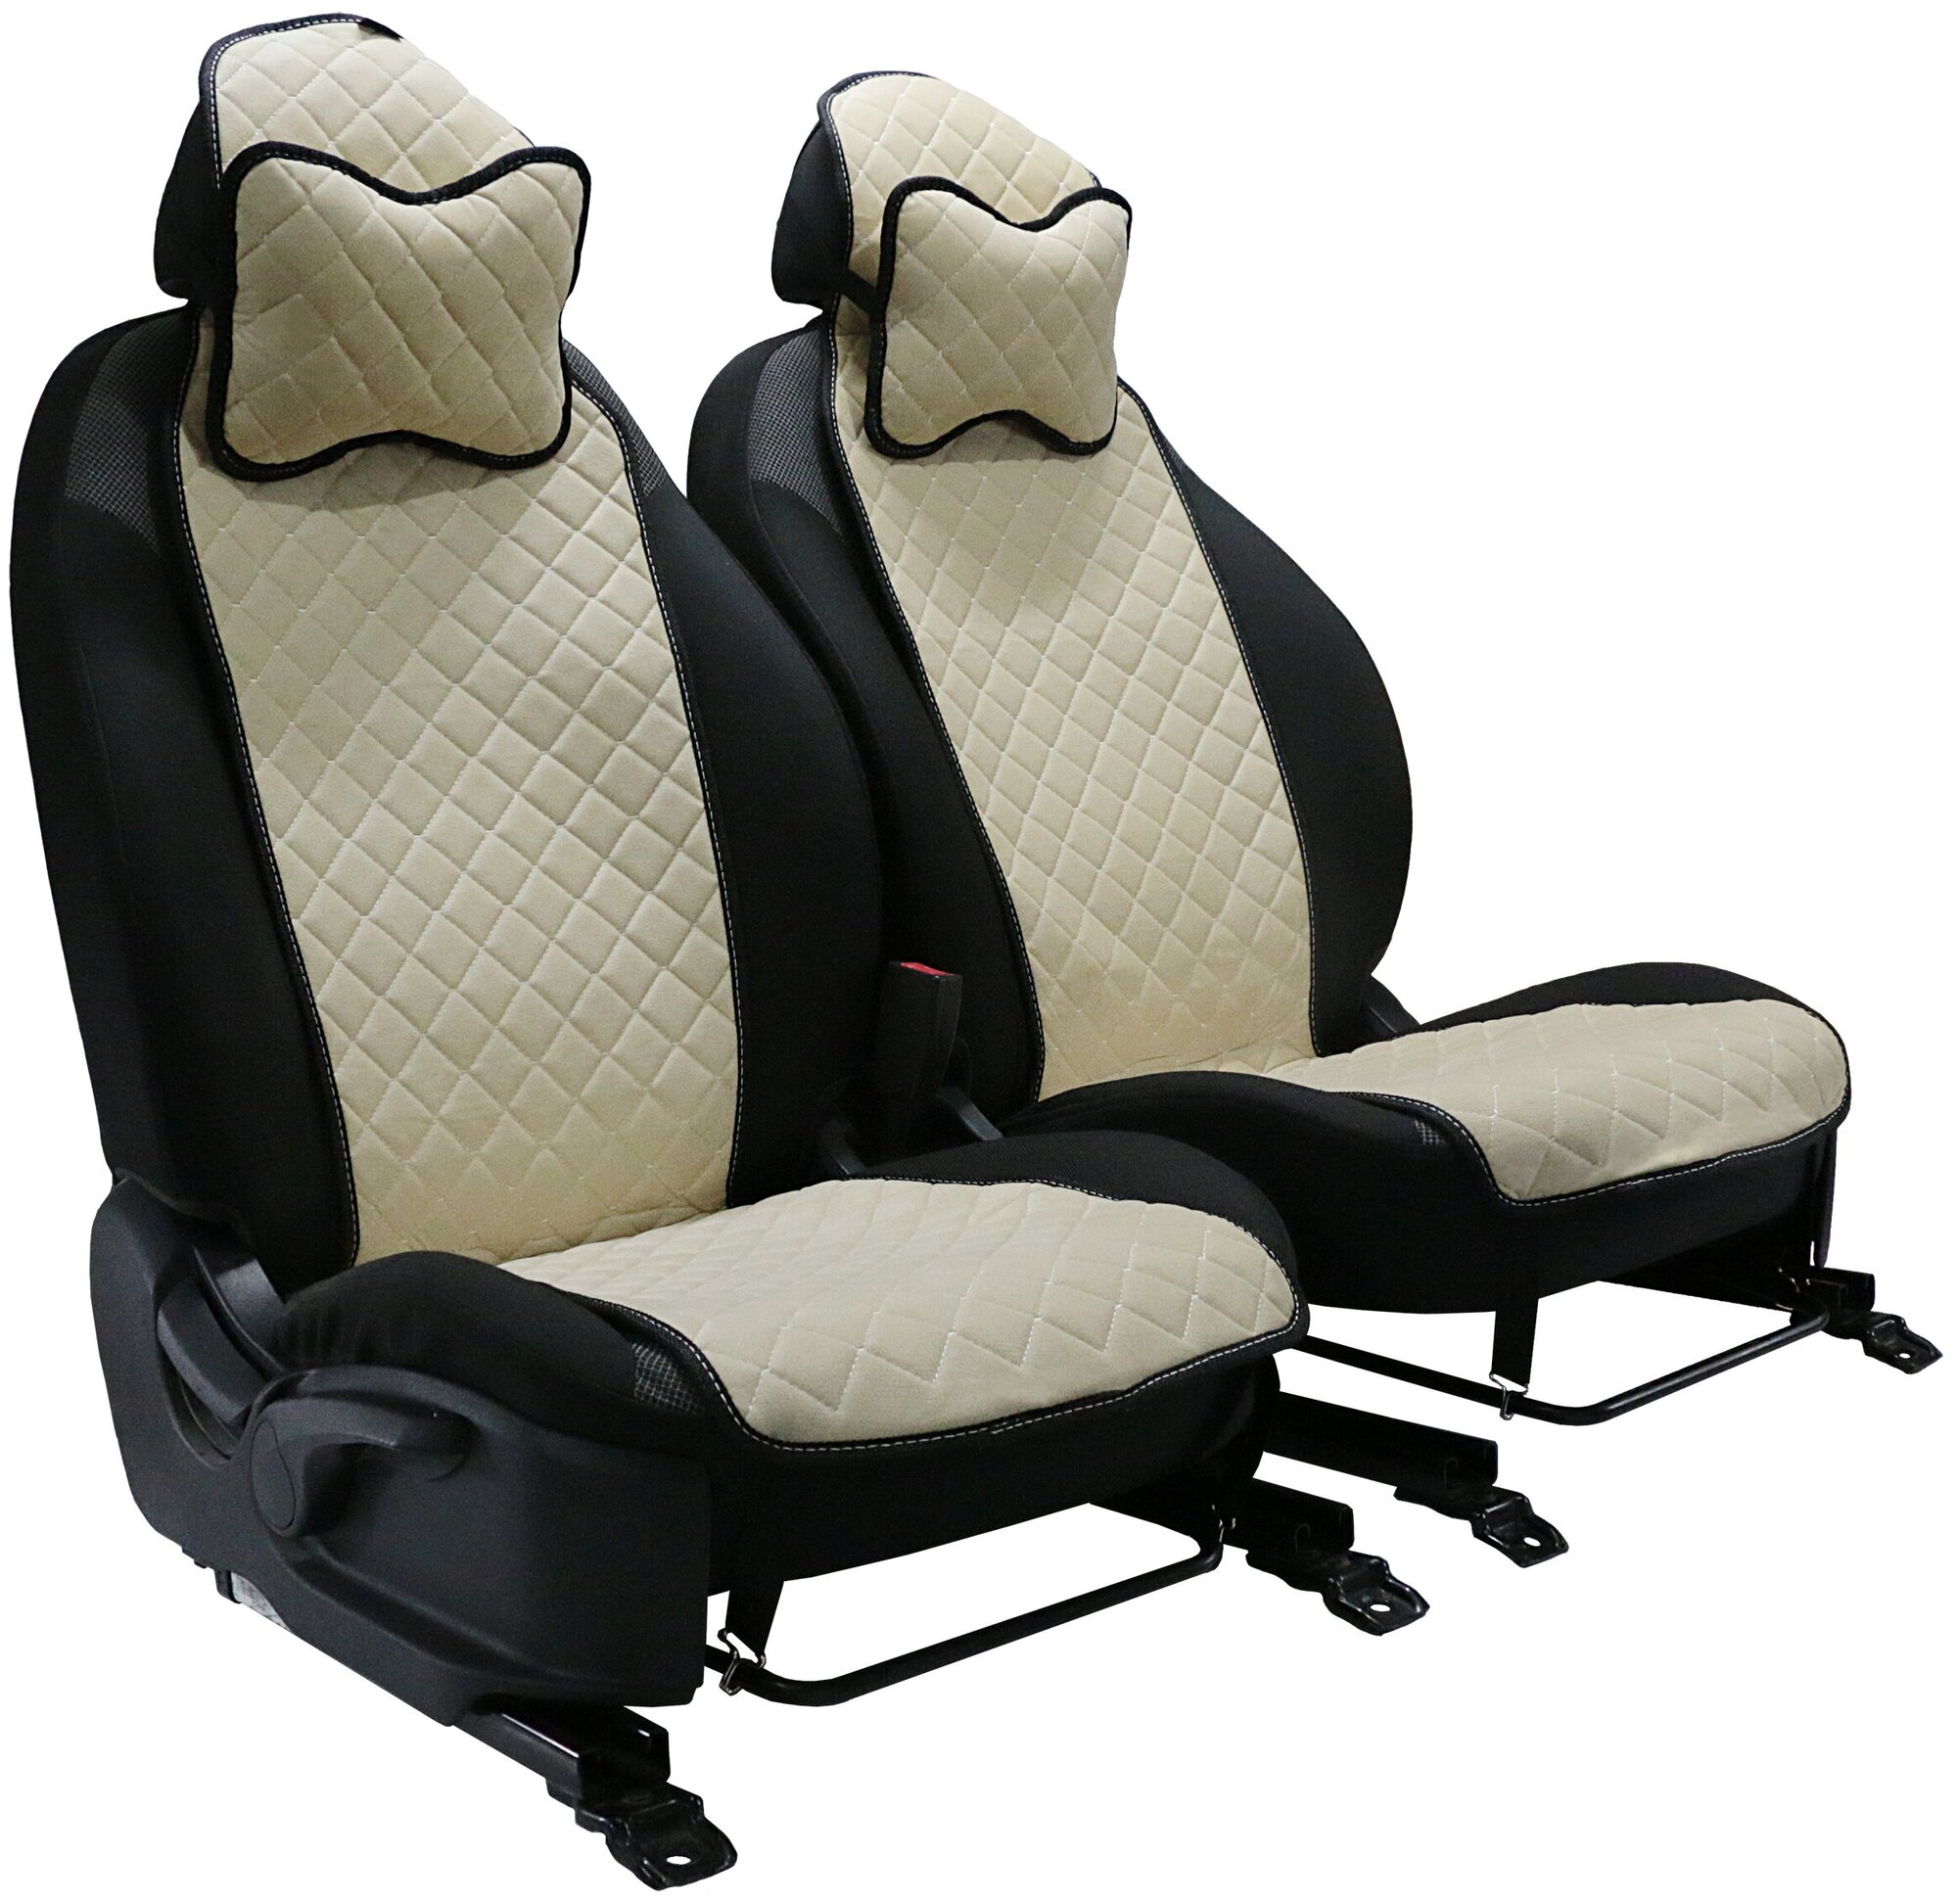 Подушка на сиденье автомобиля универсальная из велюра премиум-класса. Ткань ромб бежевый строчка белая/подголовник для автомобильных сидений - 2 шт.